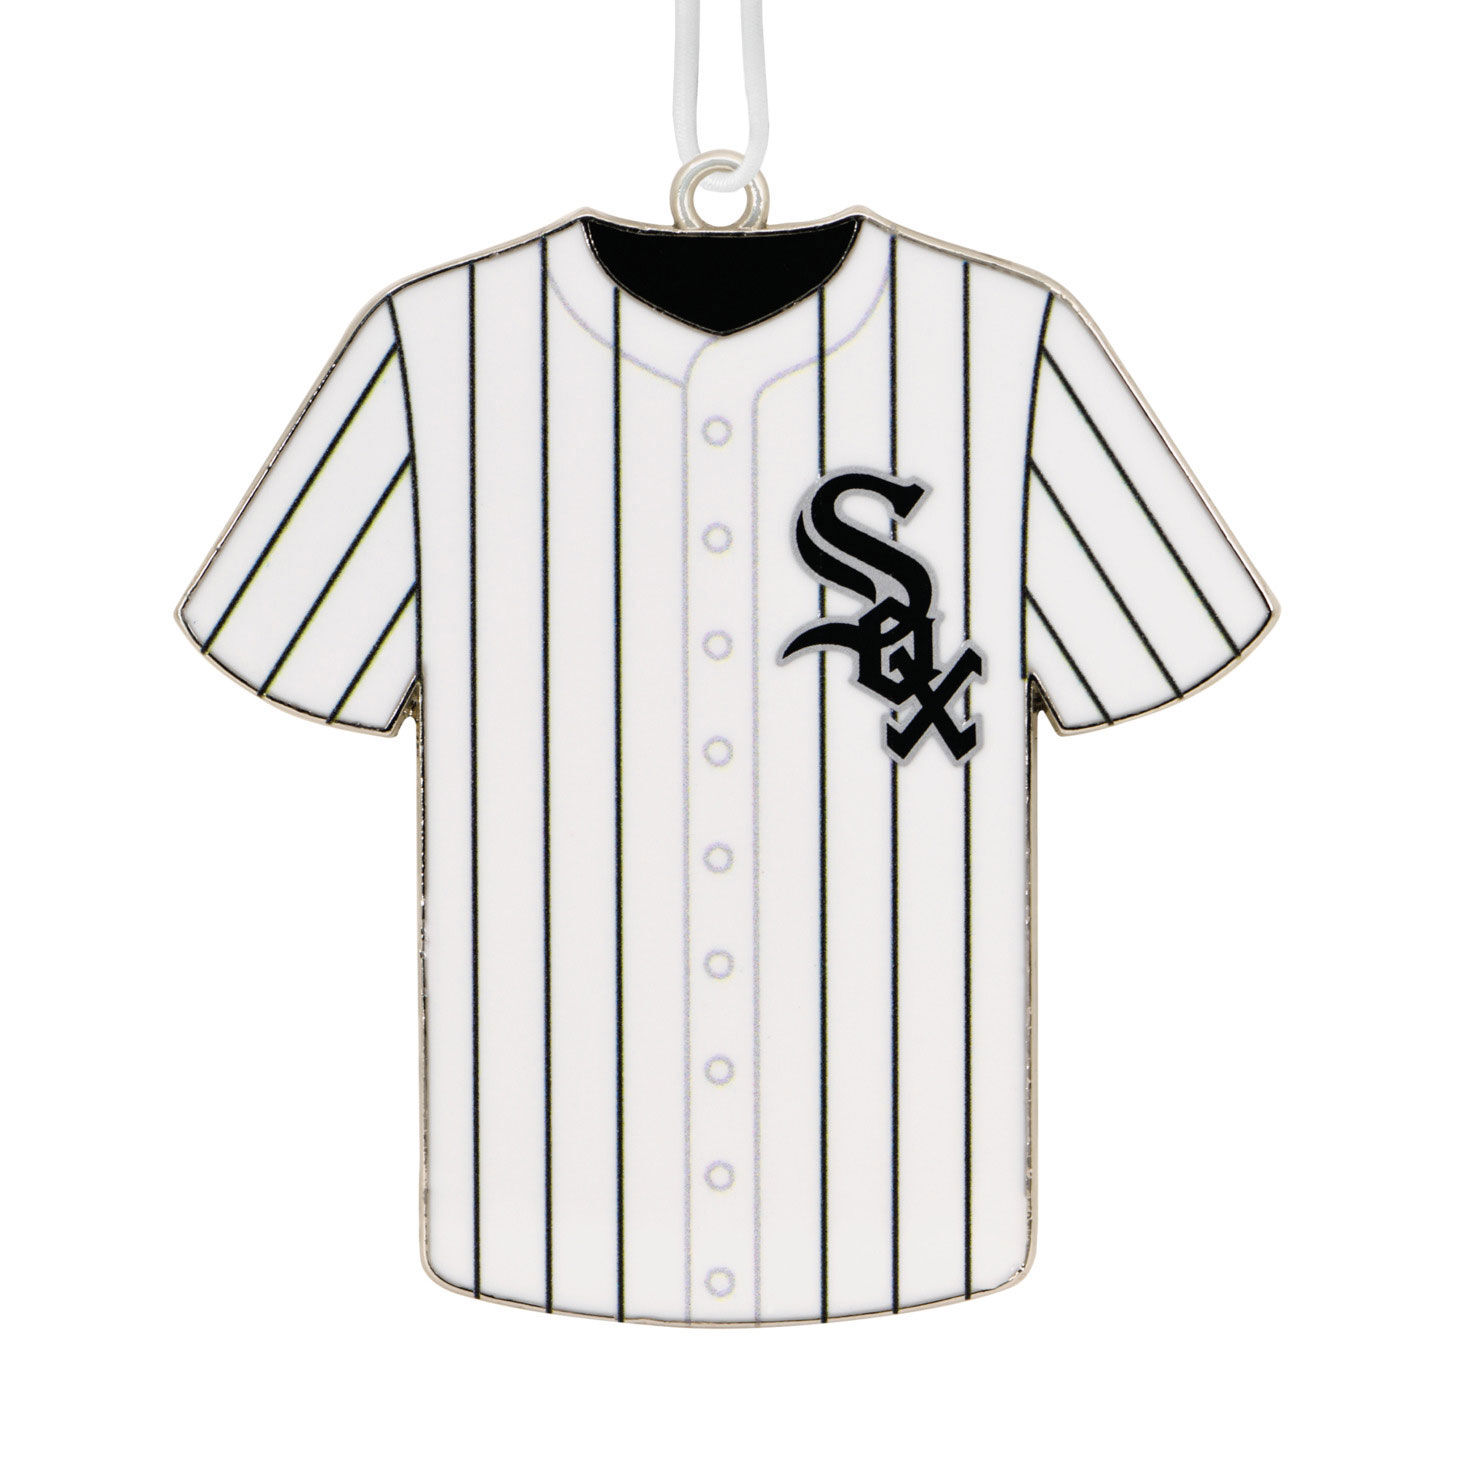 white sox baseball jersey